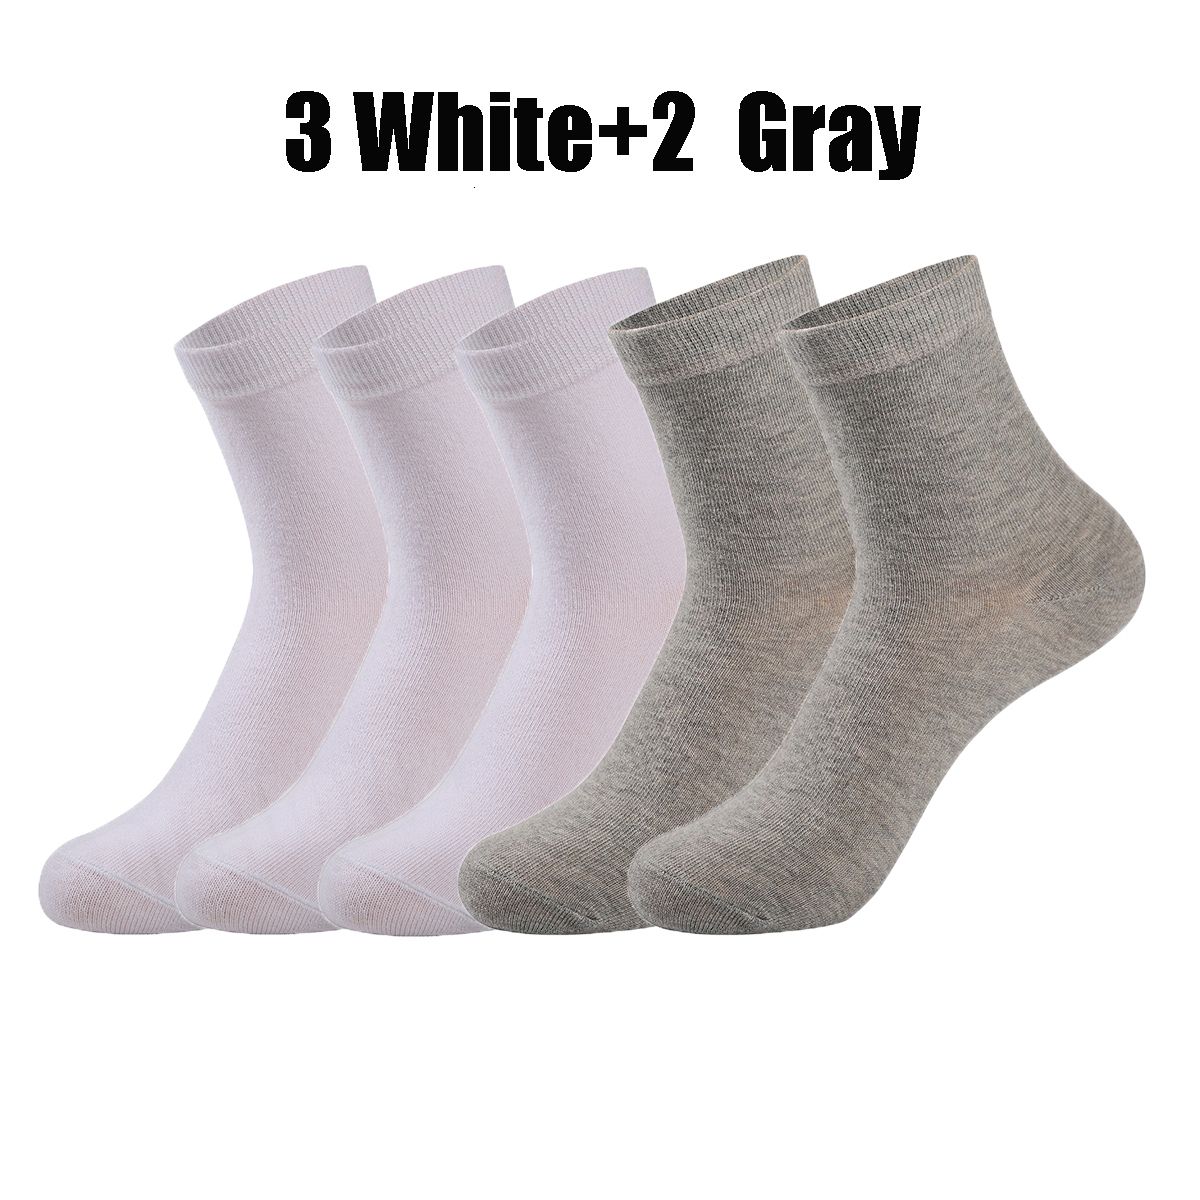 3 White2gray